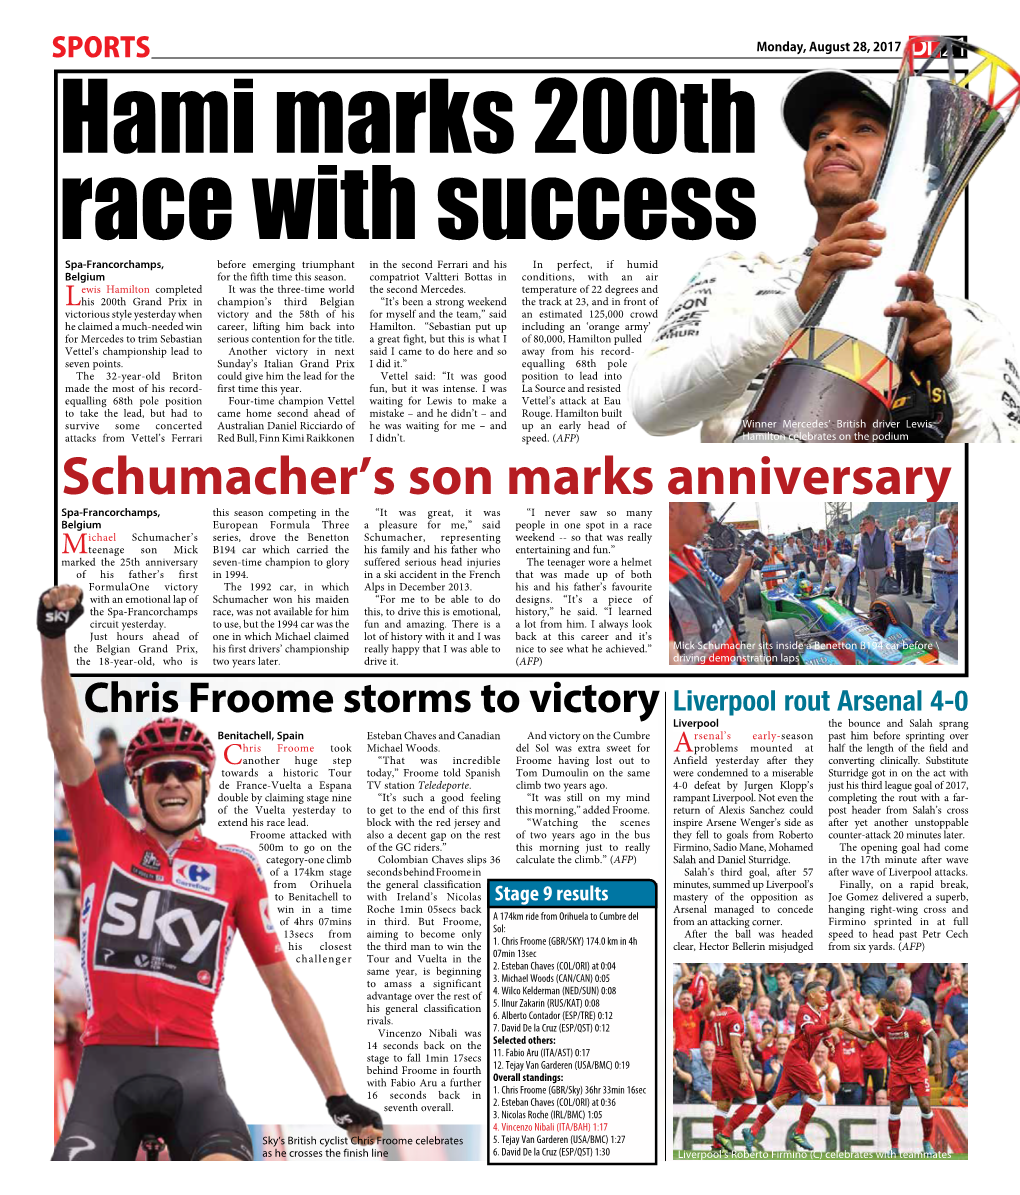 Schumacher's Son Marks Anniversary